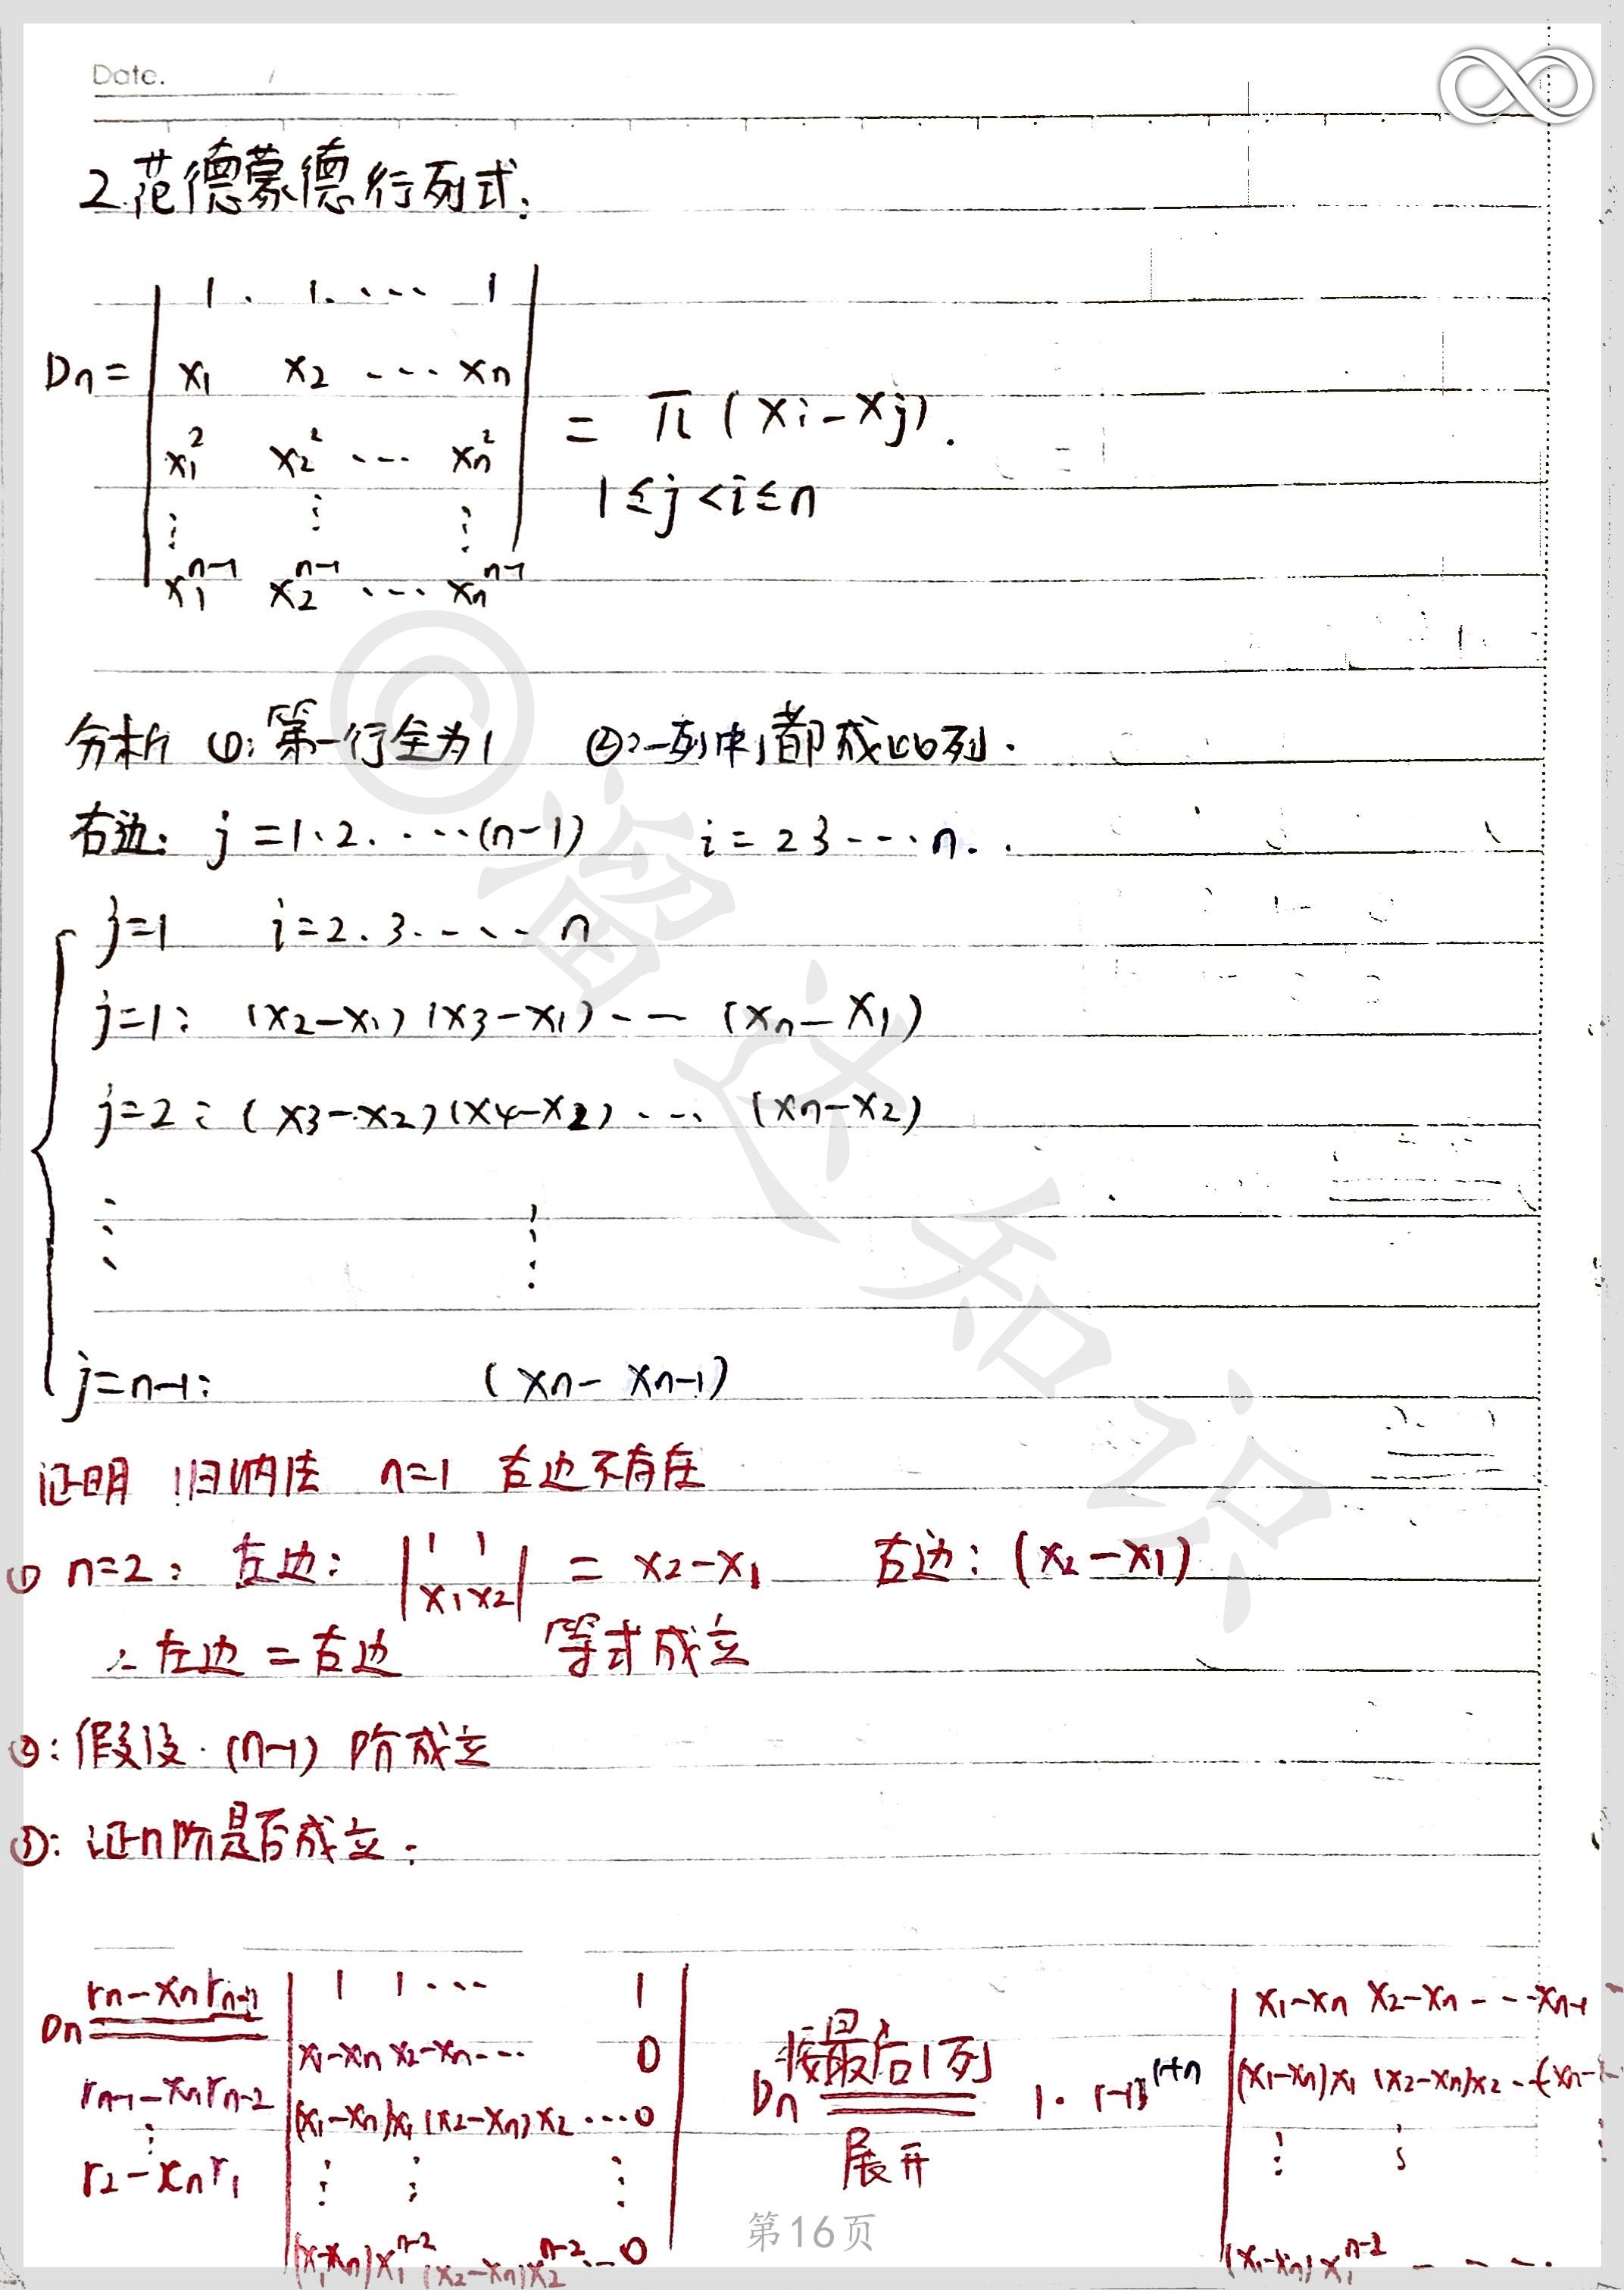 工程数学线性代数课堂笔记 知乎 1064